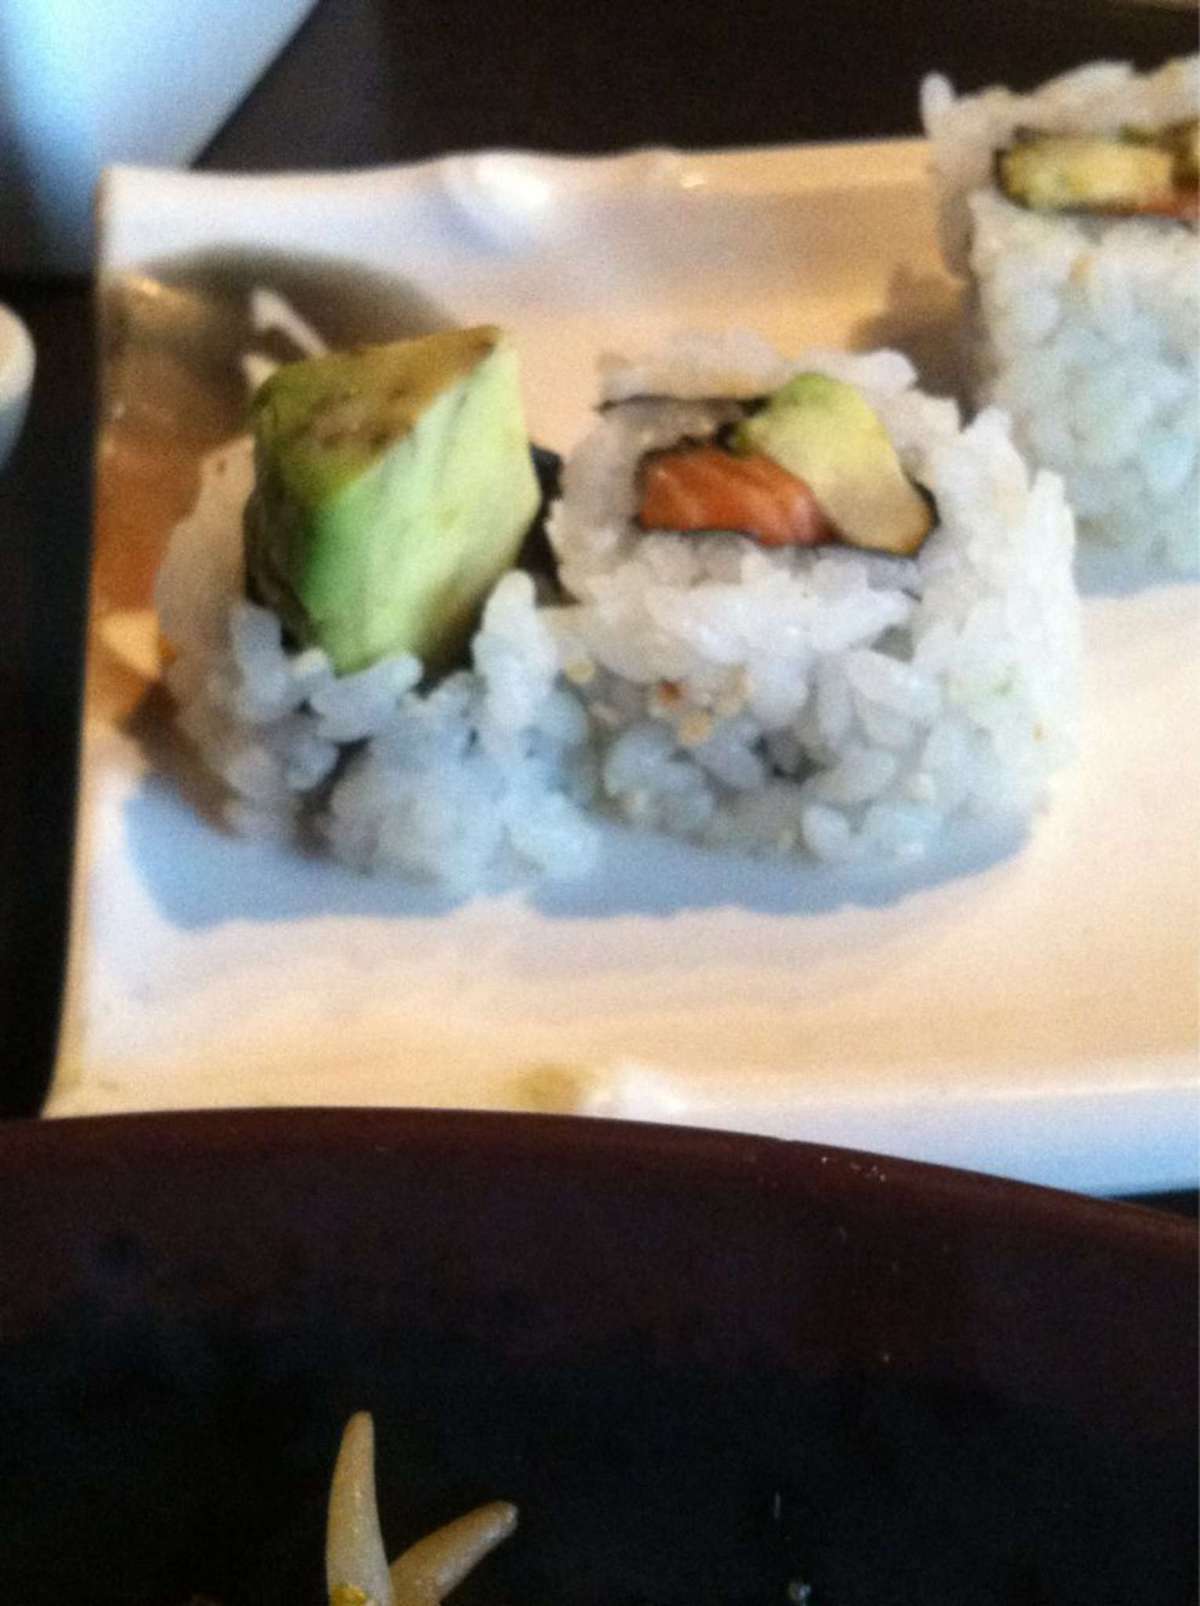 iron chef house sushi